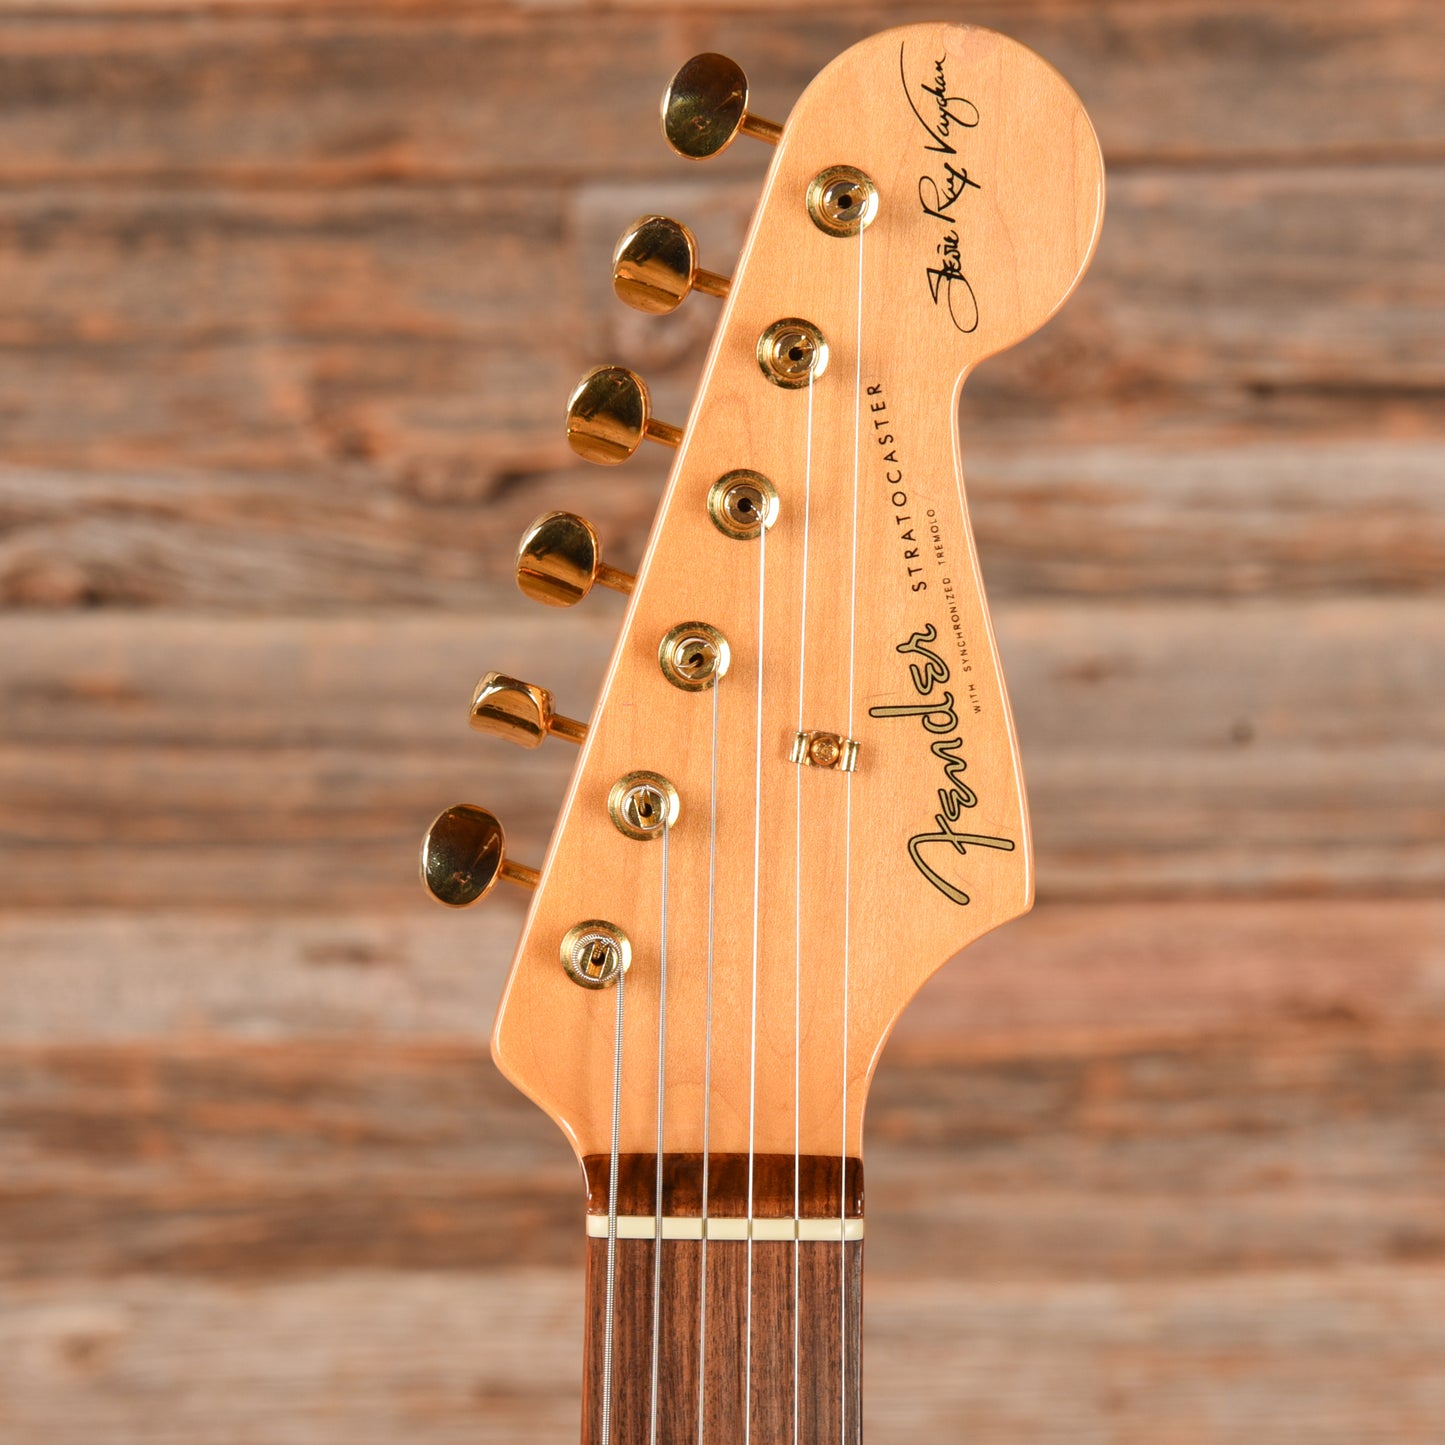 Fender Stevie Ray Vaughan Stratocaster Sunburst 2004